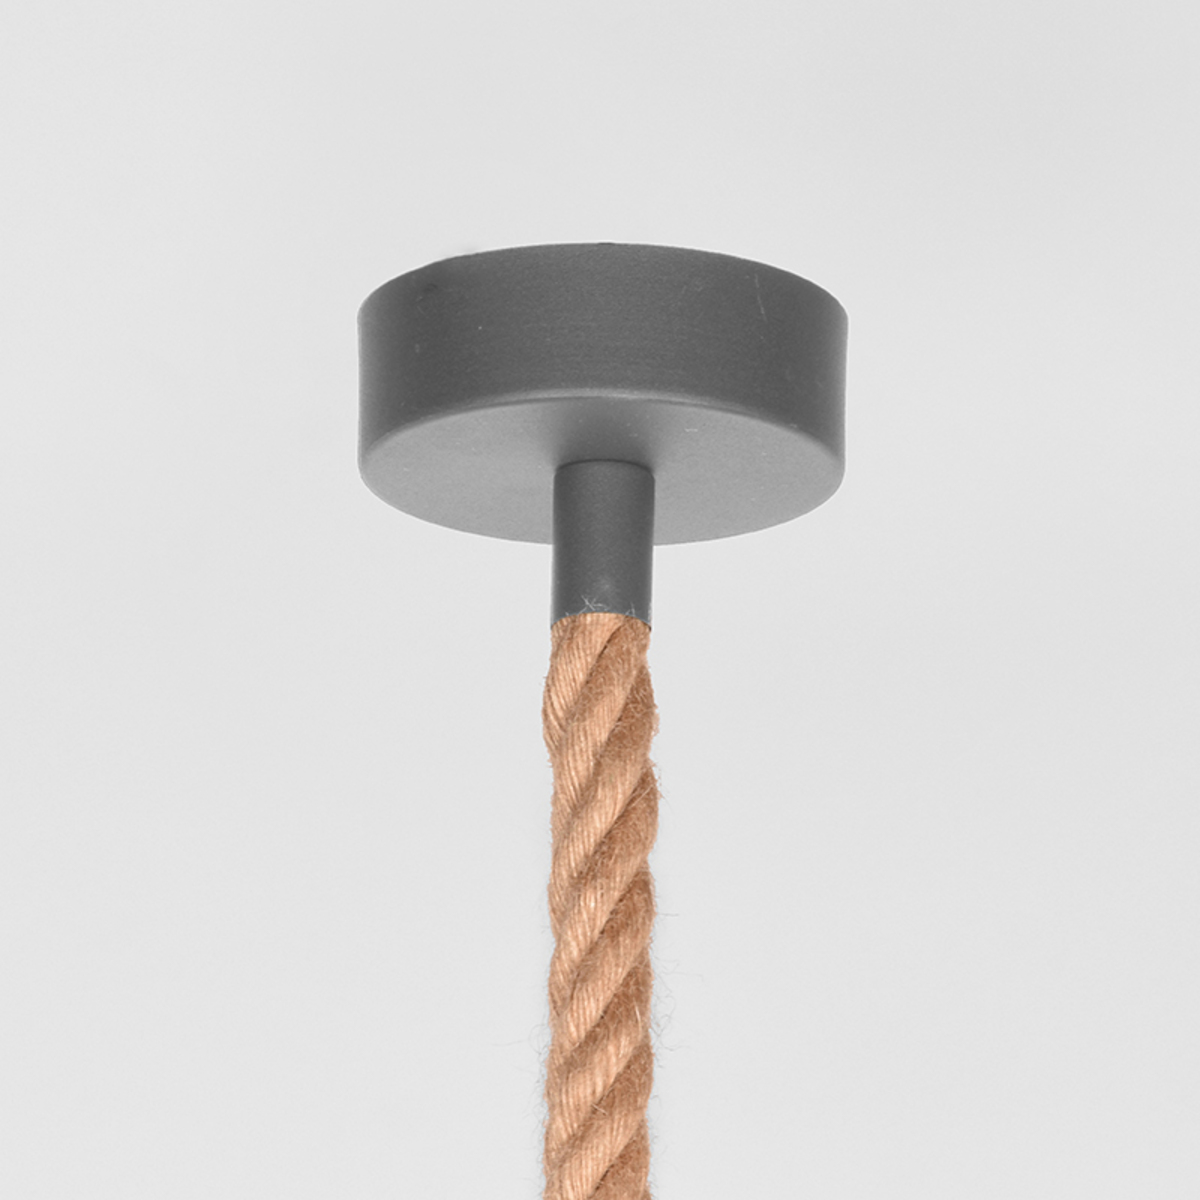  Hanglamp Trier - Concrete - Metaal afbeelding 3